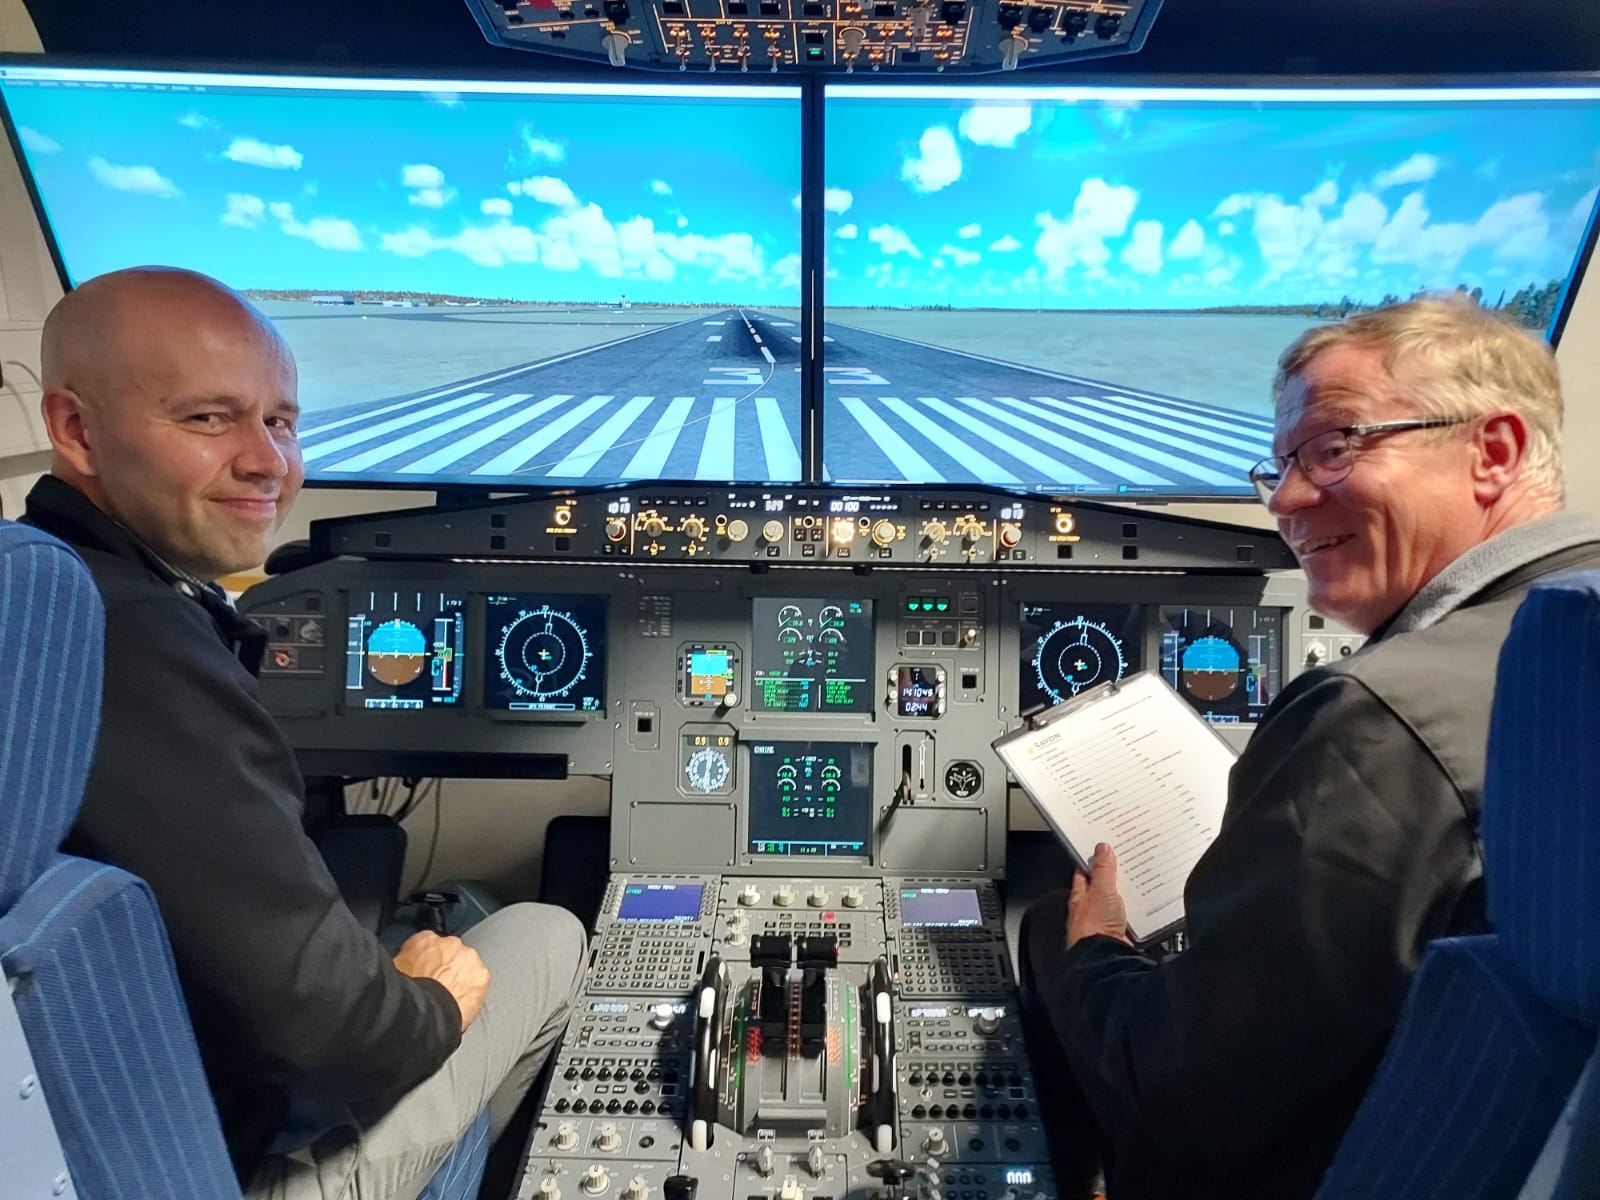 Kunnanjohtaja Janne Airaksinen ja Savon koulutuskuntayhtymän johtaja Heikki Helve lentokonesimulaattorissa.